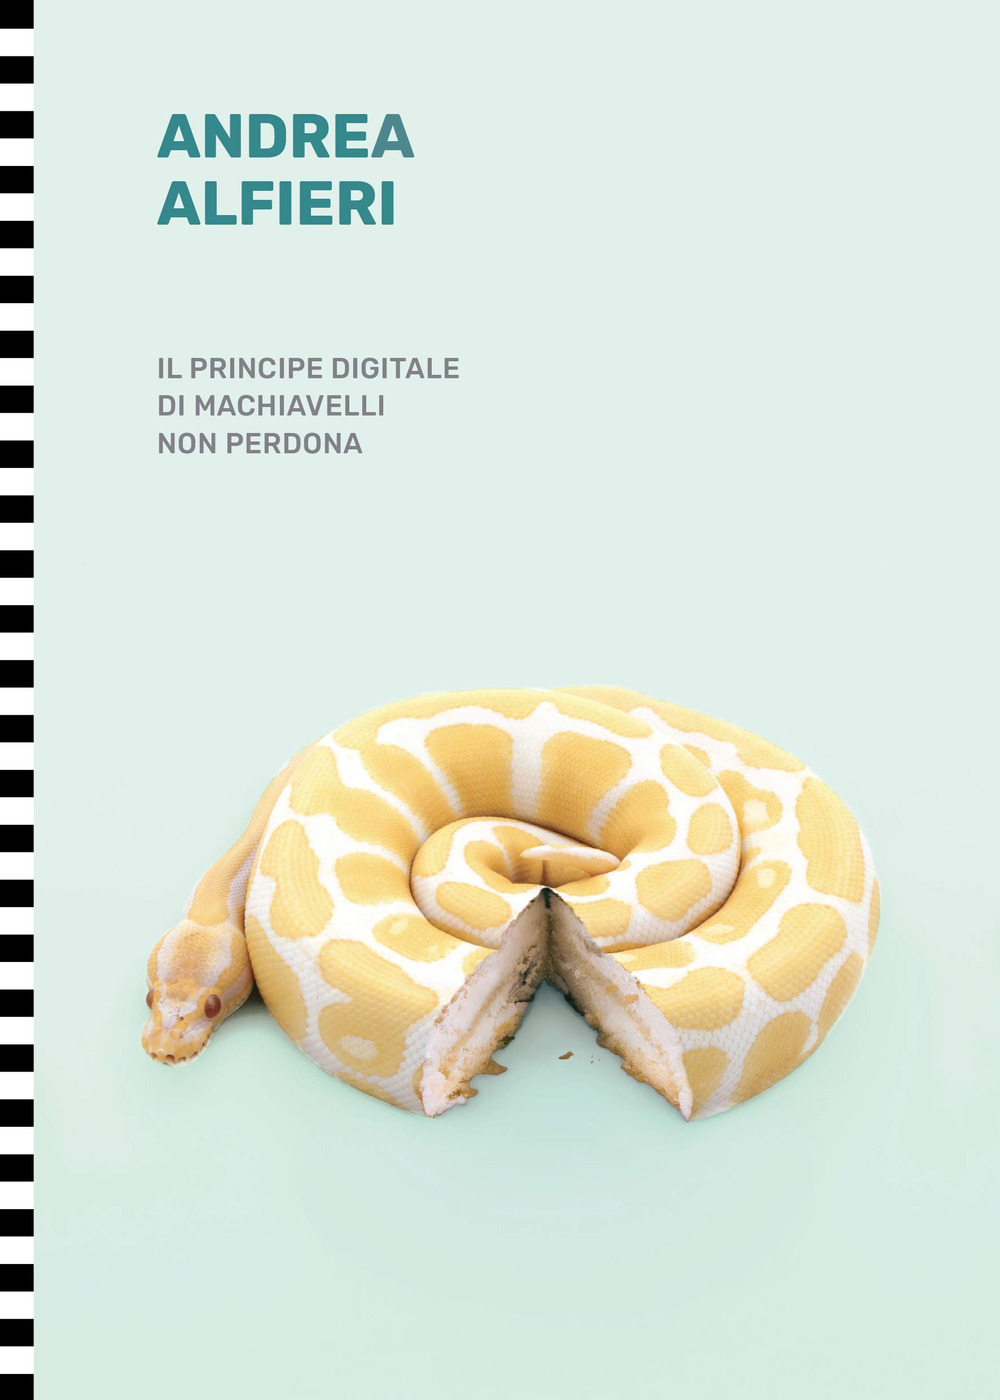 Libri Andrea Alfieri - Il Principe Digitale Di Machiavelli Non Perdona NUOVO SIGILLATO, EDIZIONE DEL 19/05/2021 SUBITO DISPONIBILE